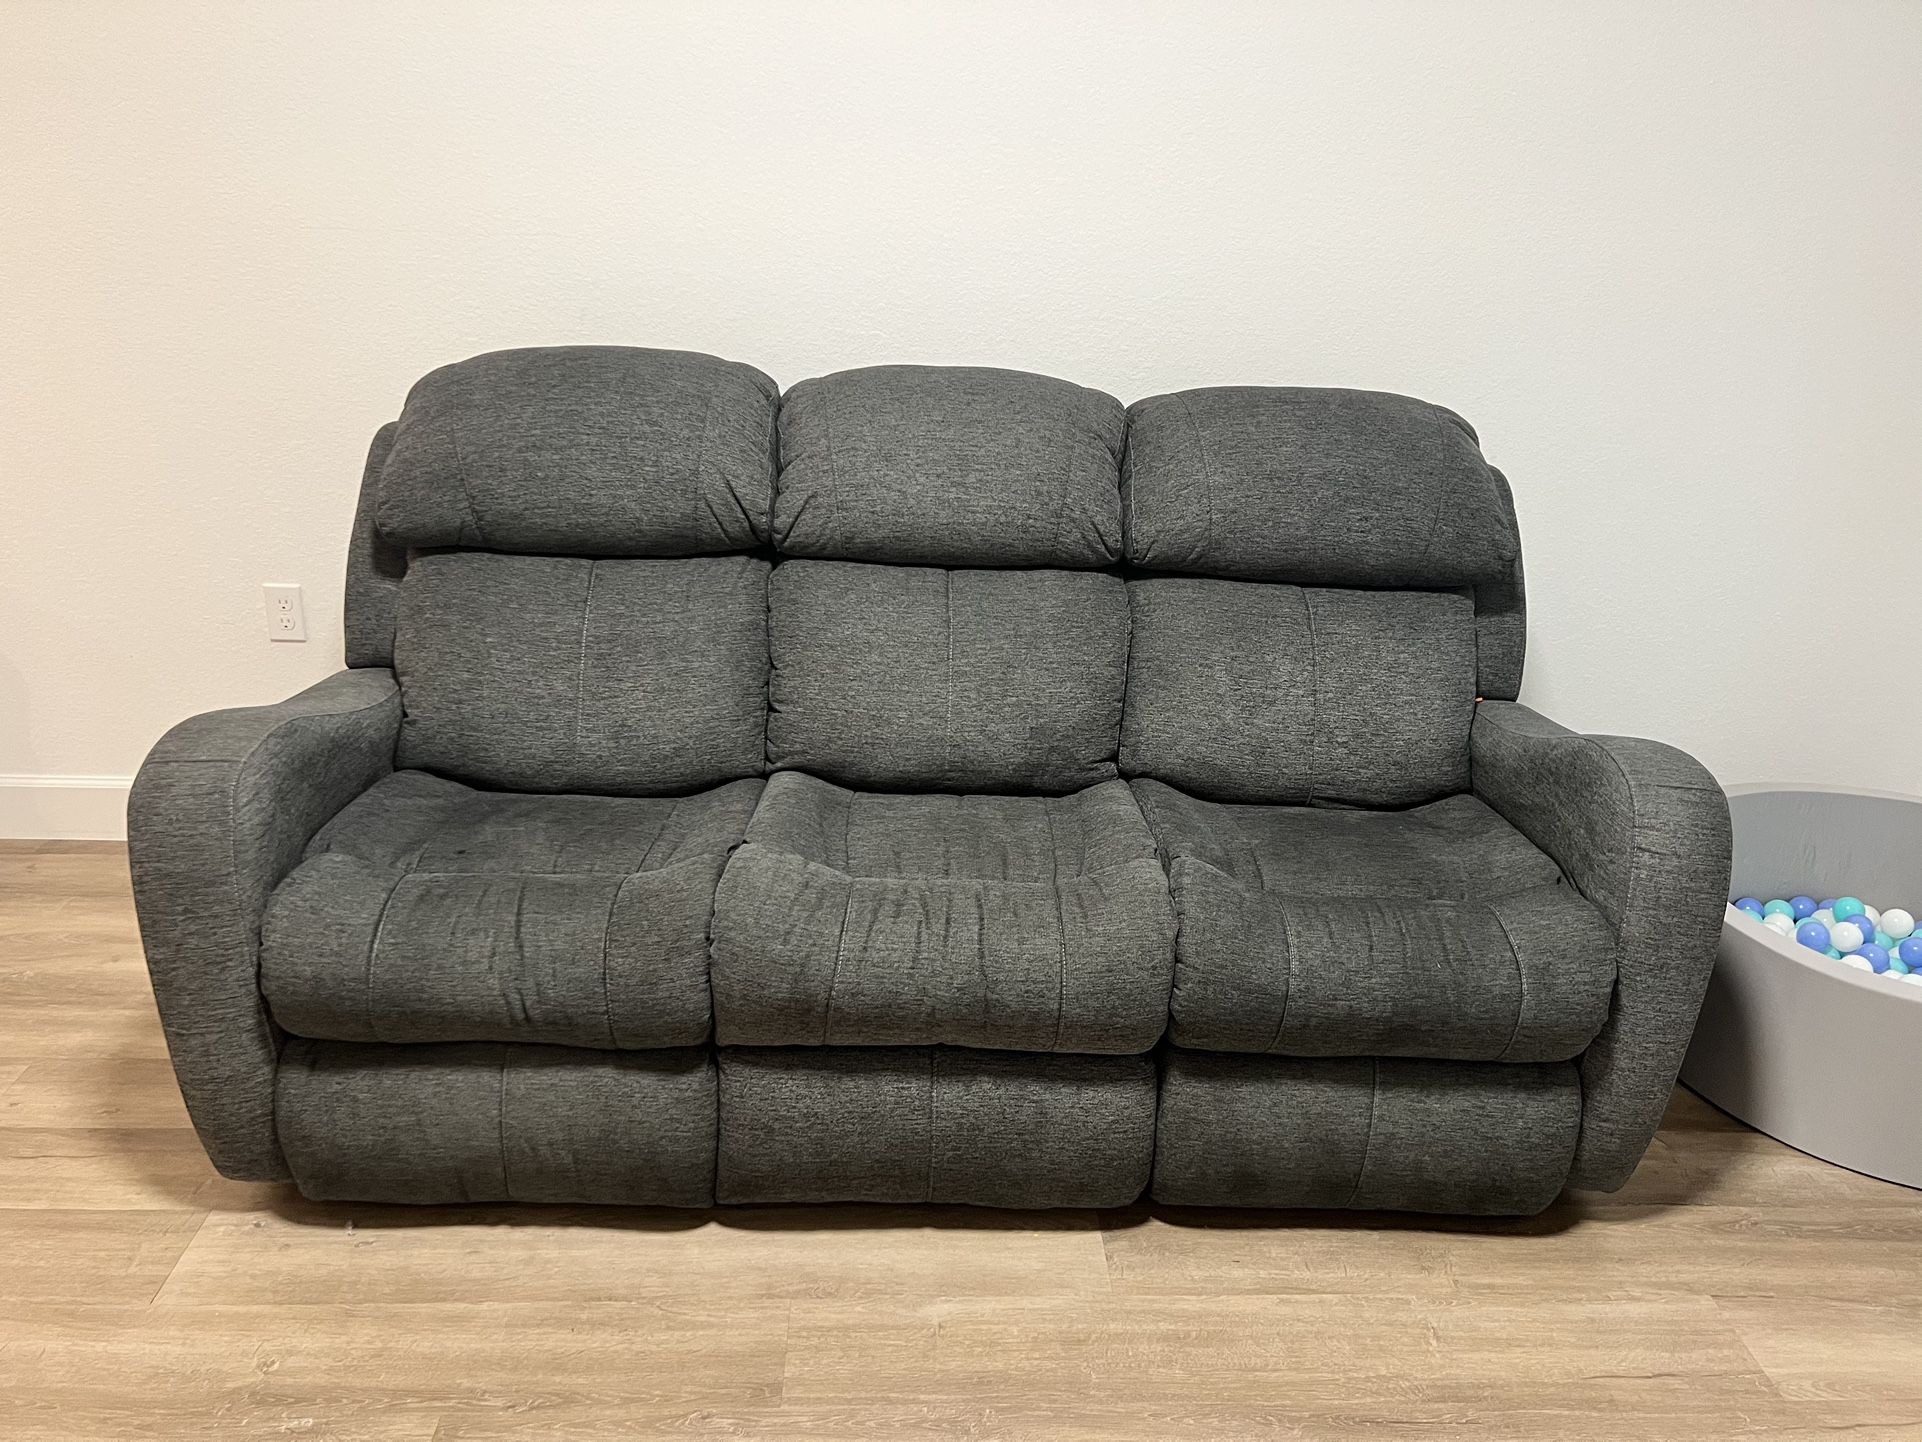 City Furniture Sofa Recliner 